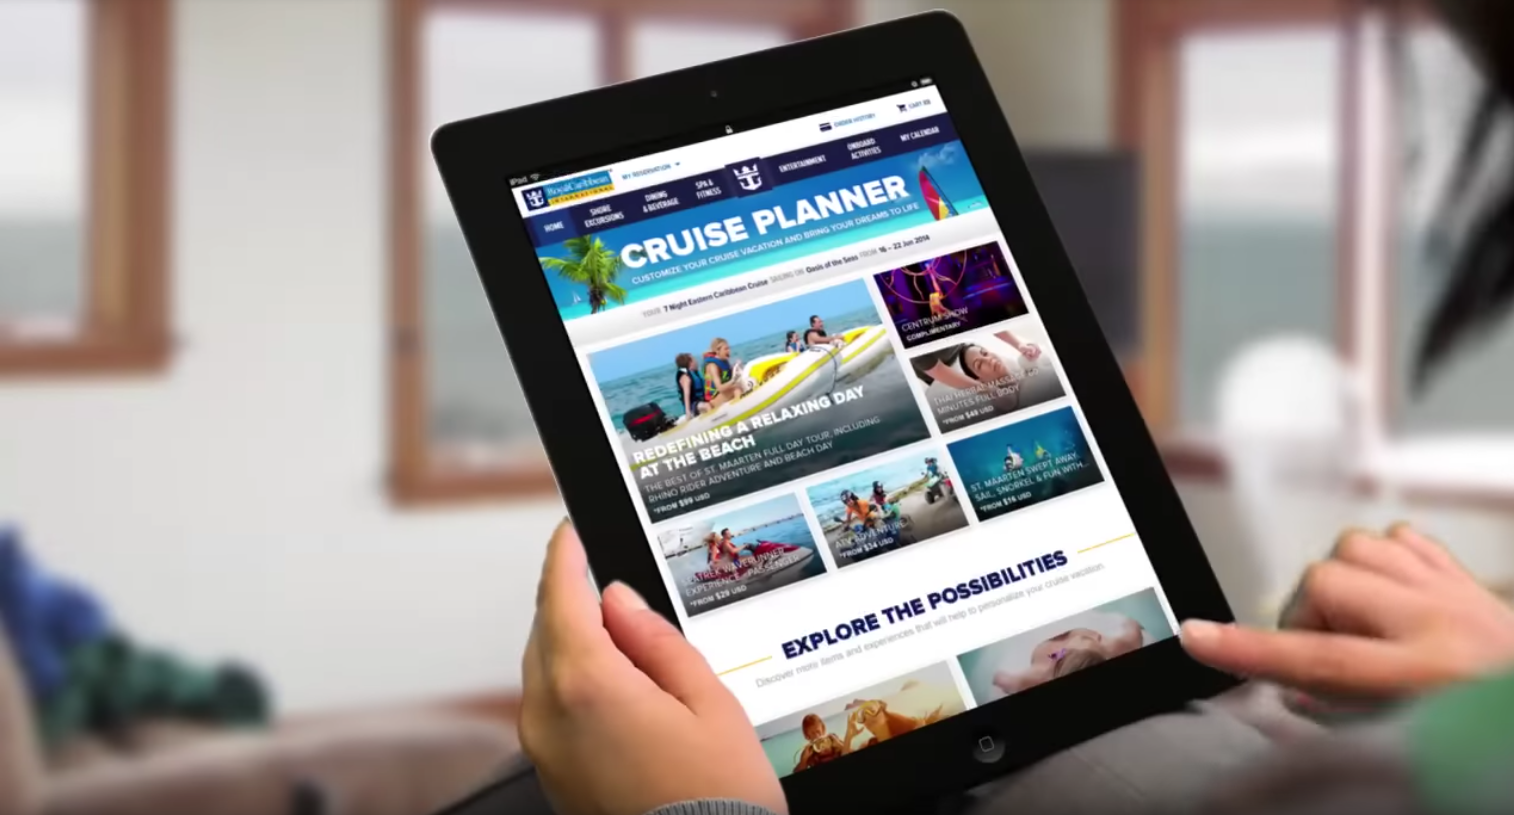 Cruise planner on iPad